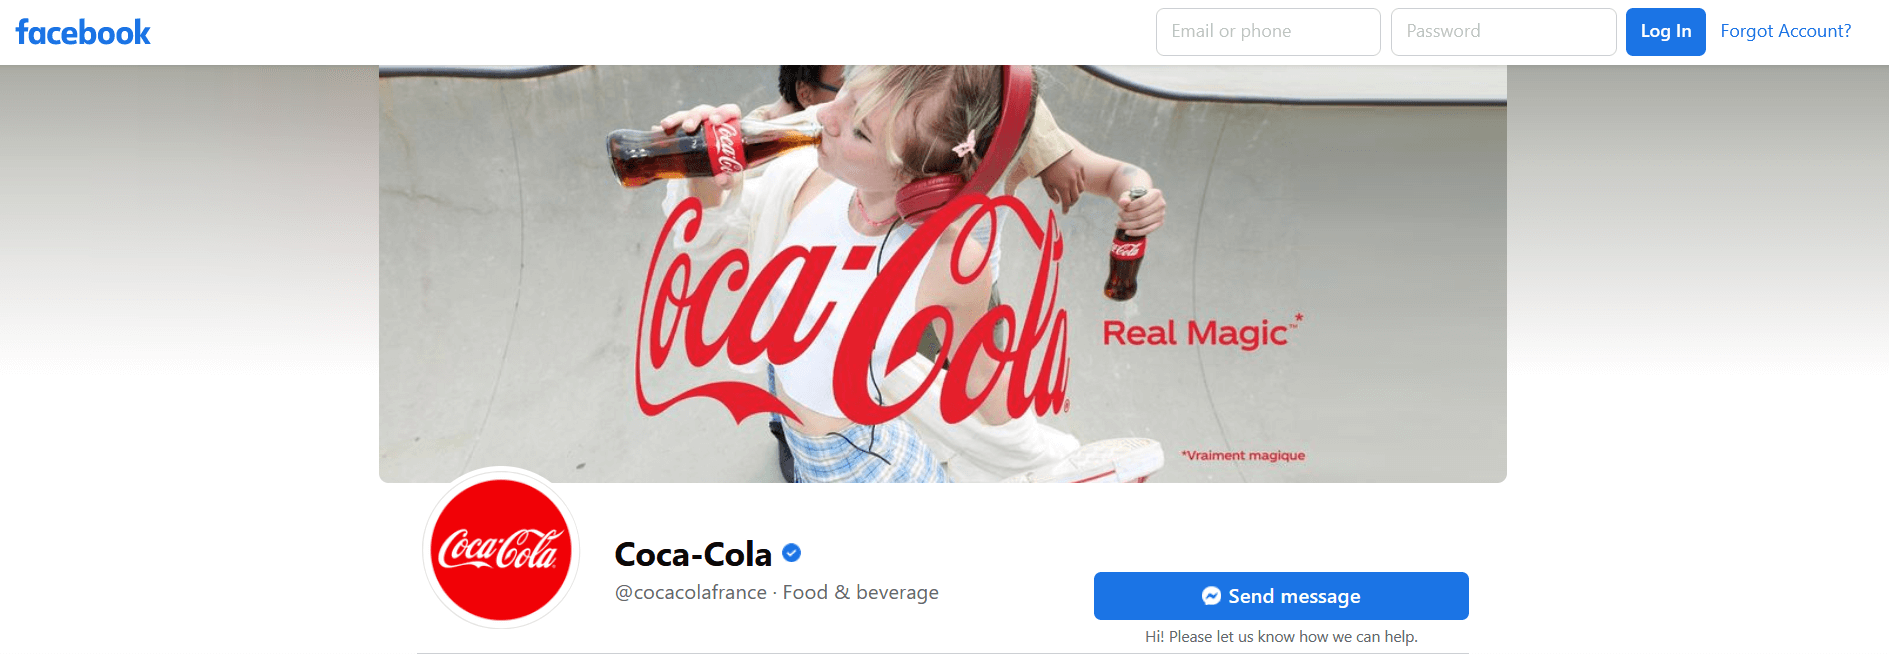 Growth Hacking : Publicité de la marque Coca-Cola sur Facebook